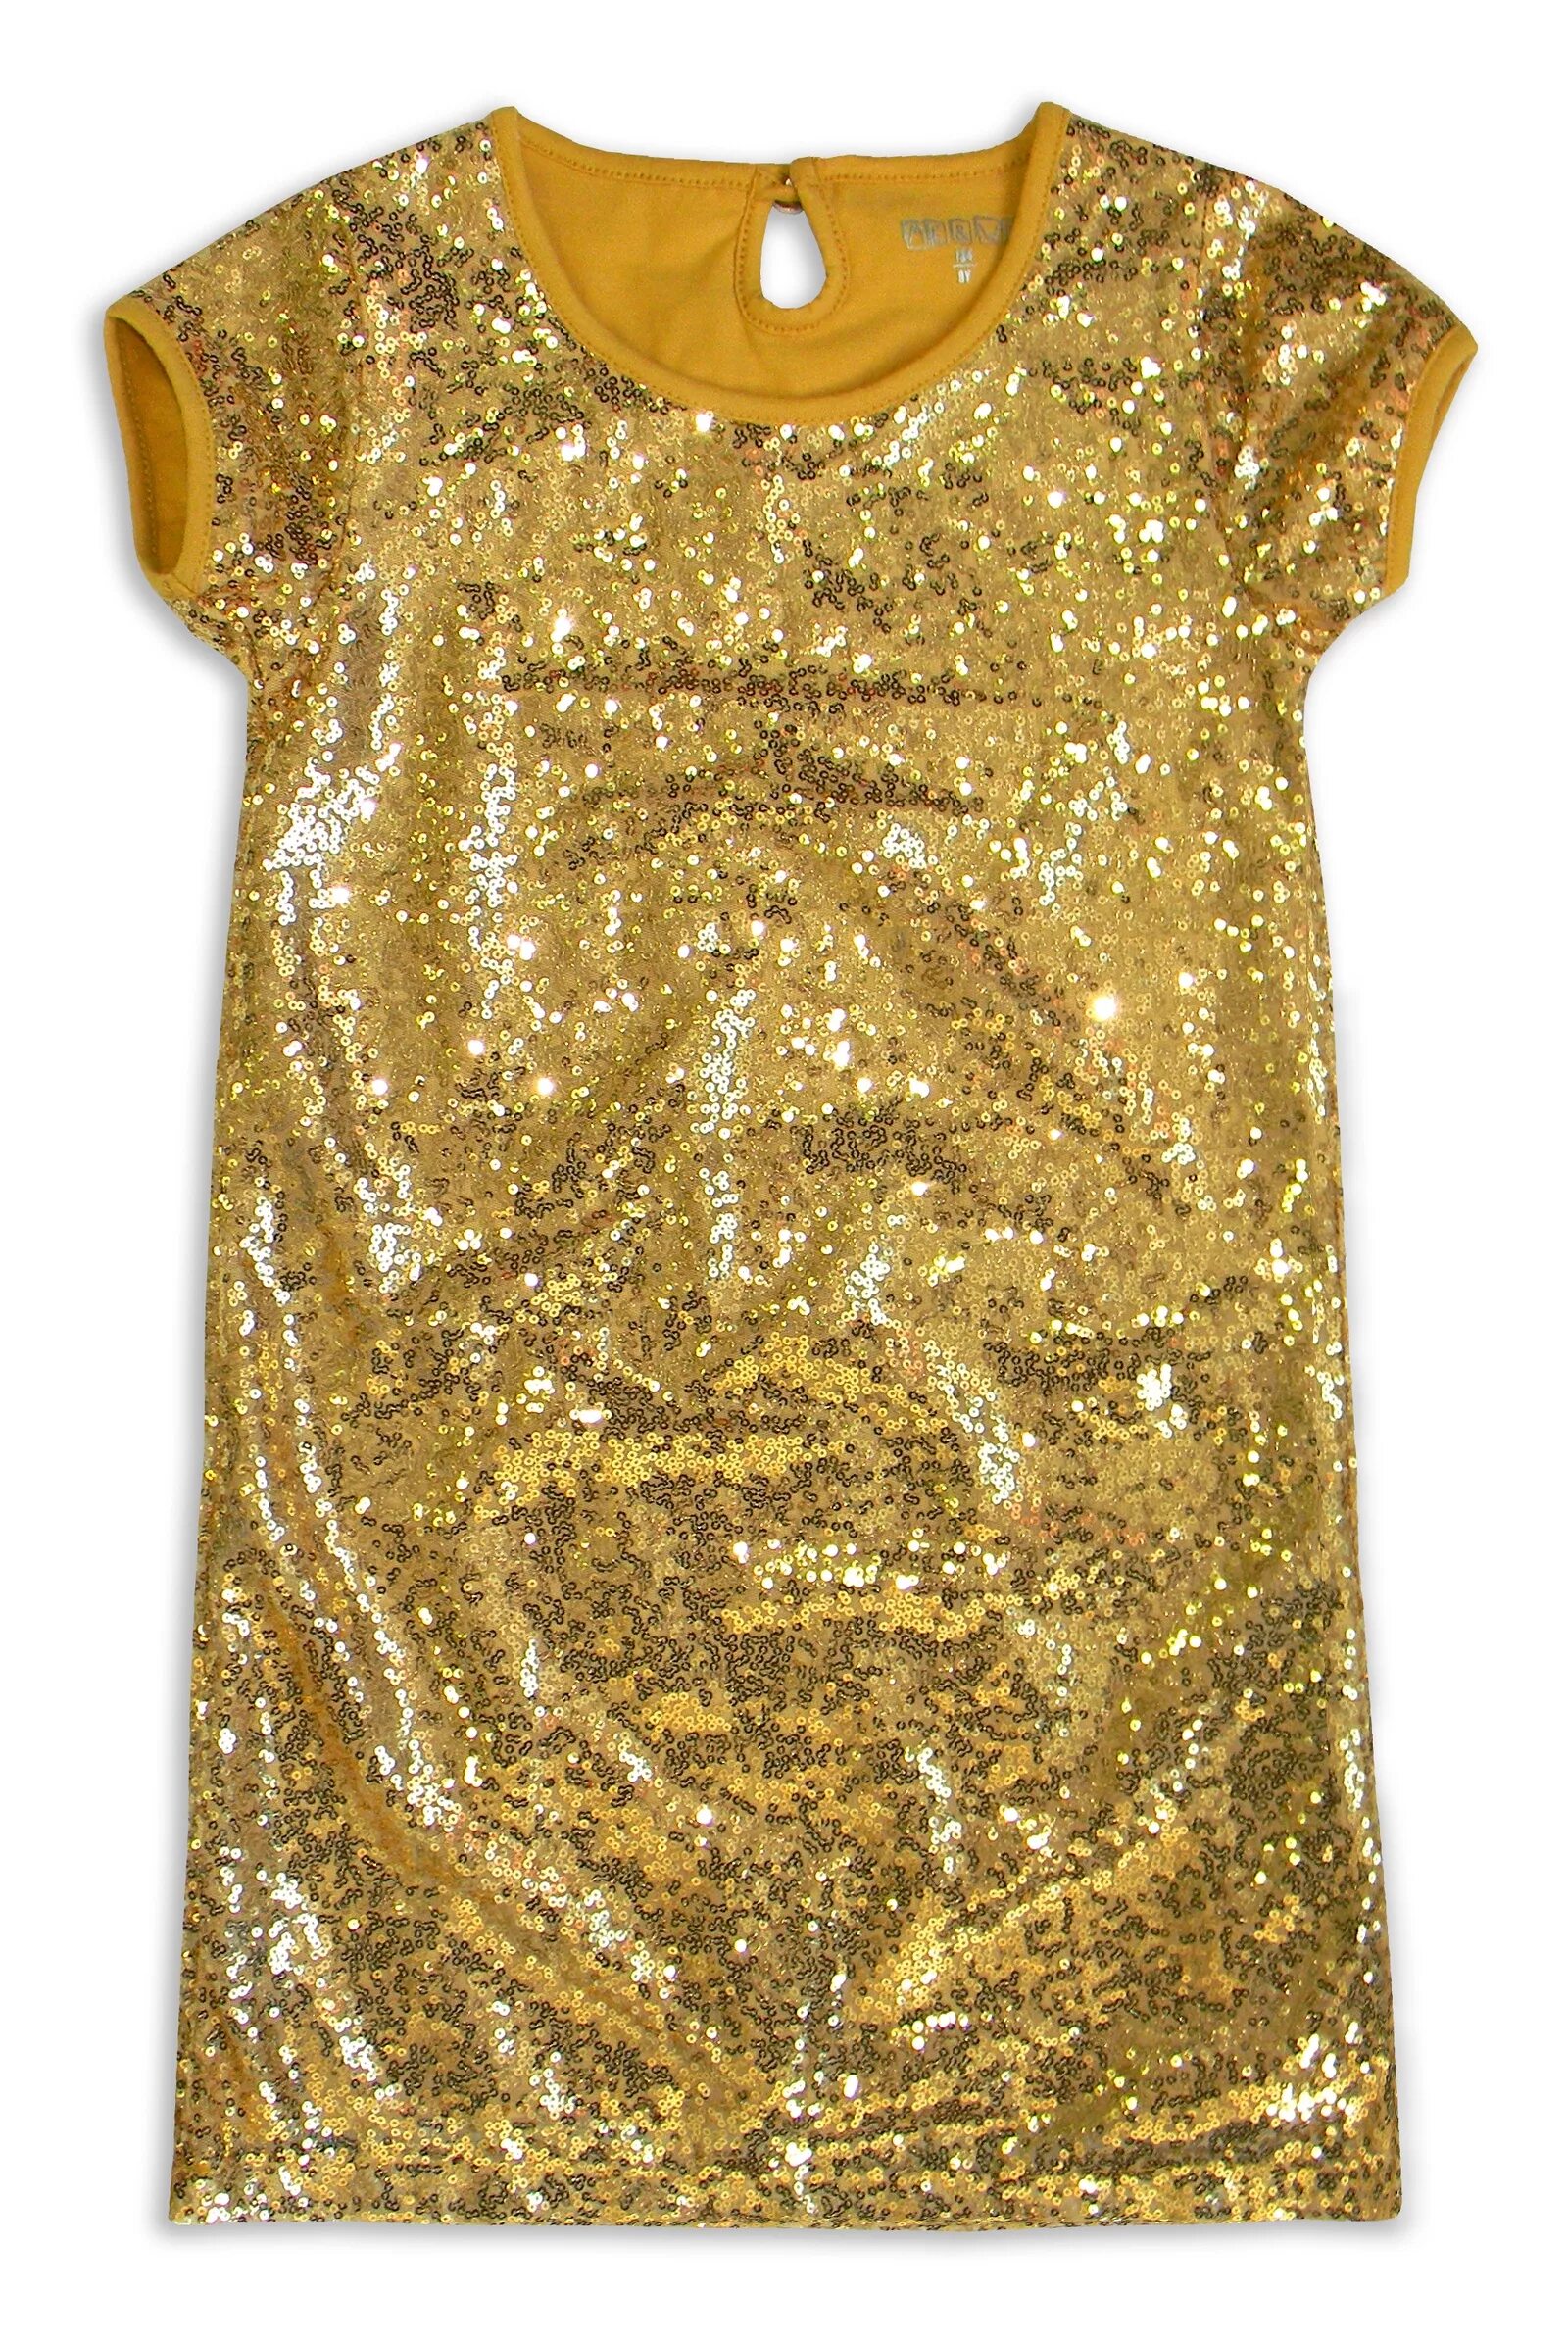 Дети gold. Детское платье с пайетками. Золотое платье для девочки. Золотистое платье для девочки. Платье с золотыми пайетками для девочки.